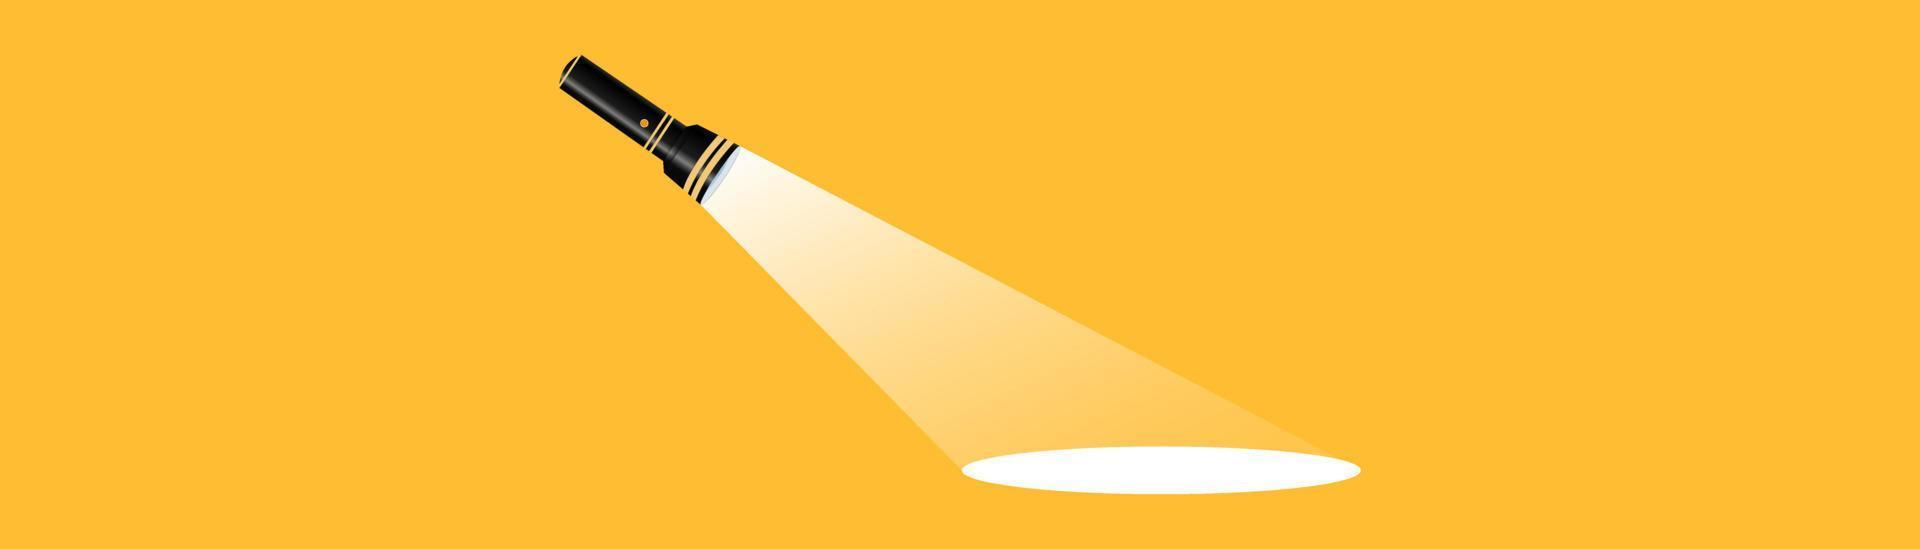 silueta de linterna sobre un fondo amarillo. encontrar o encontrar un concepto de diseño. aplicable como banner, anuncio, diseño de mensajes. ilustración vectorial plana. linterna, bombilla, foco, publicidad. vector